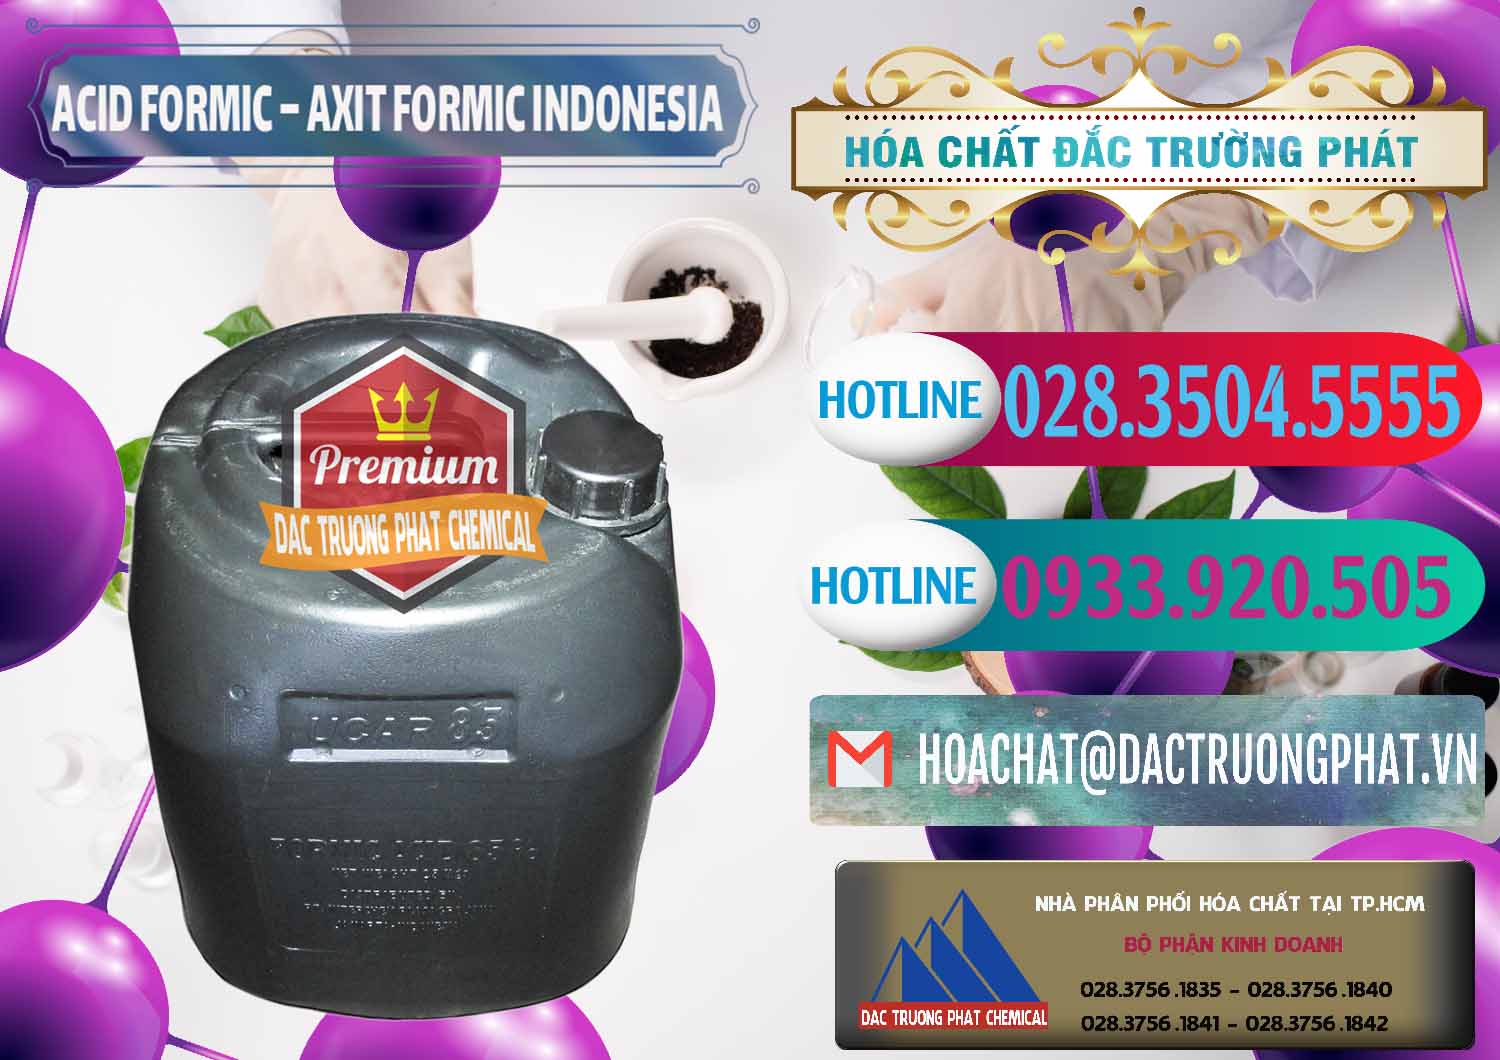 Công ty chuyên nhập khẩu và bán Acid Formic - Axit Formic Indonesia - 0026 - Cty chuyên phân phối - cung ứng hóa chất tại TP.HCM - truongphat.vn